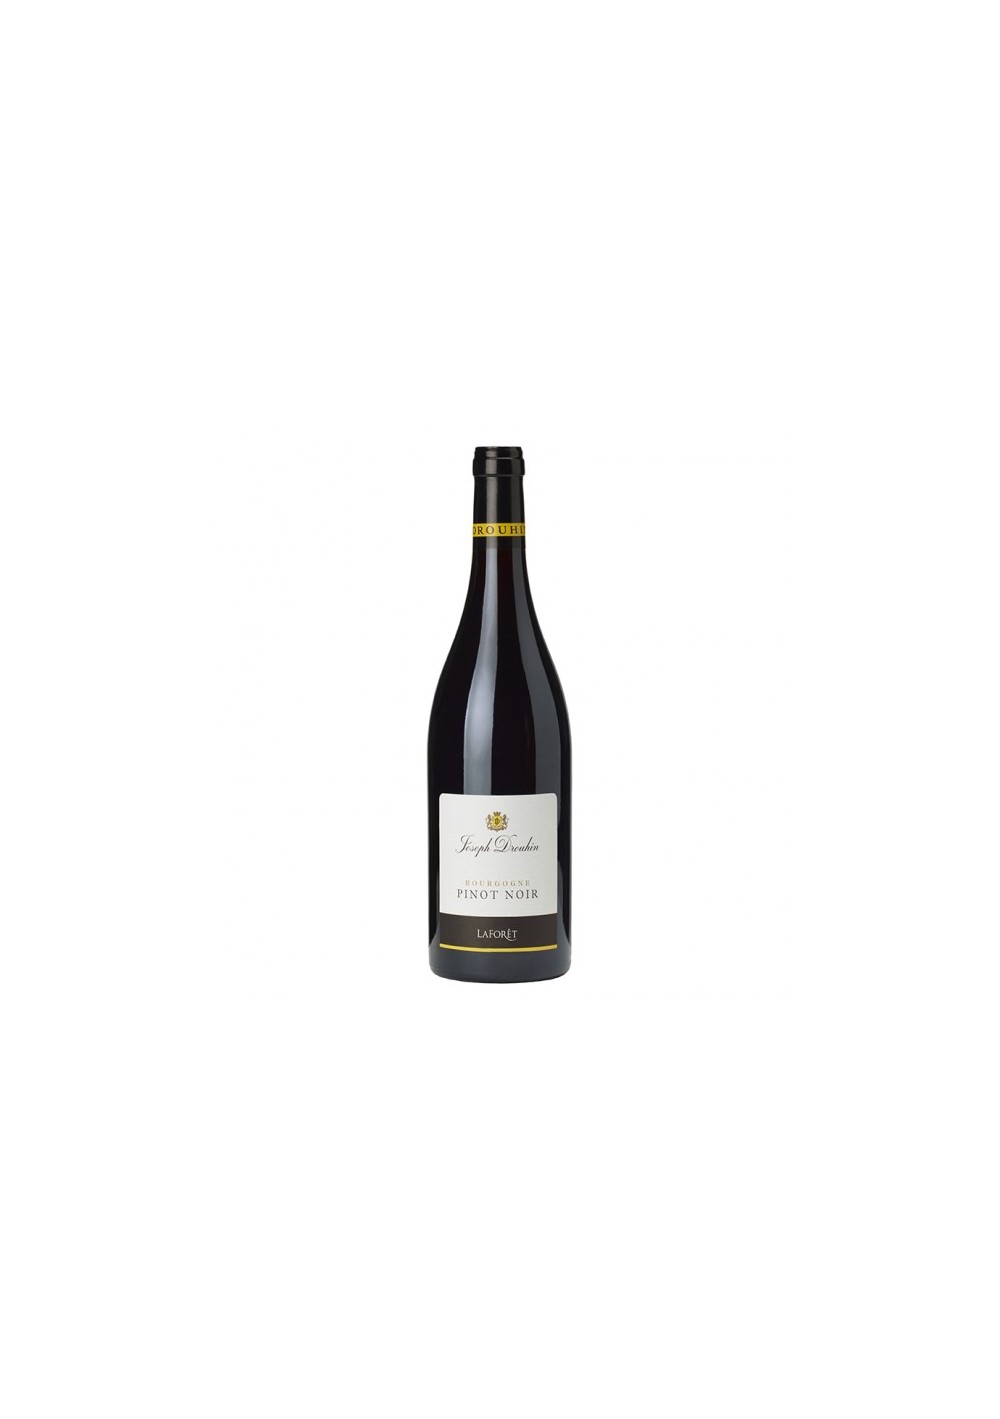 Bourgogne Pinot Noir Laforêt  2015 - Joseph Drouhin - (75cl)